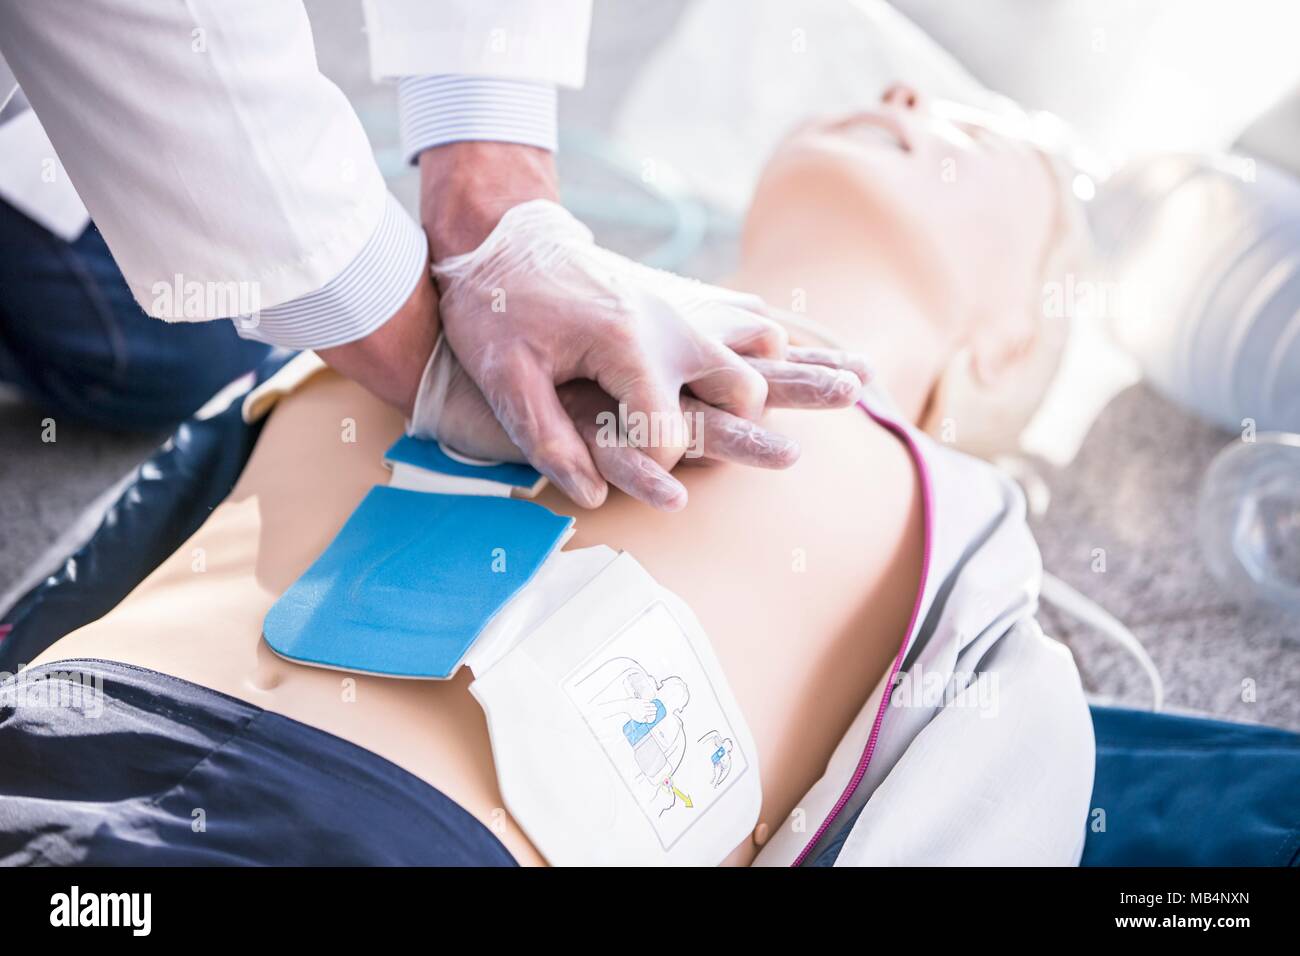 Medico impresa formazione CPR su fantocci. Defibrillatore automatico esterno pad sono state poste sul manichino al torace. Foto Stock